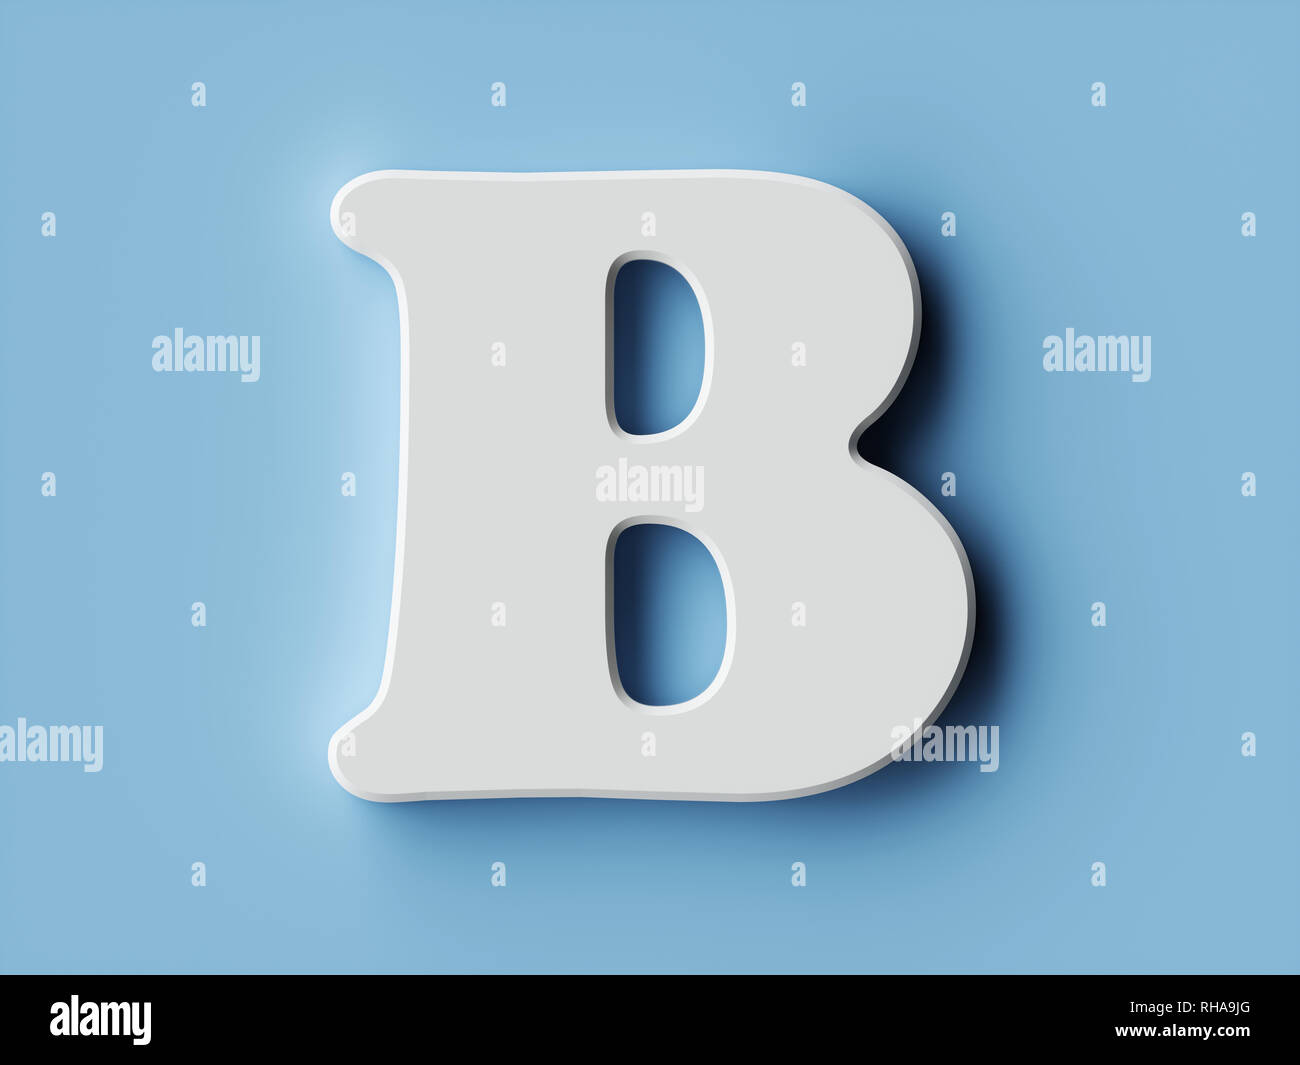 letter b green alphabet sign 3d render Stock Illustration